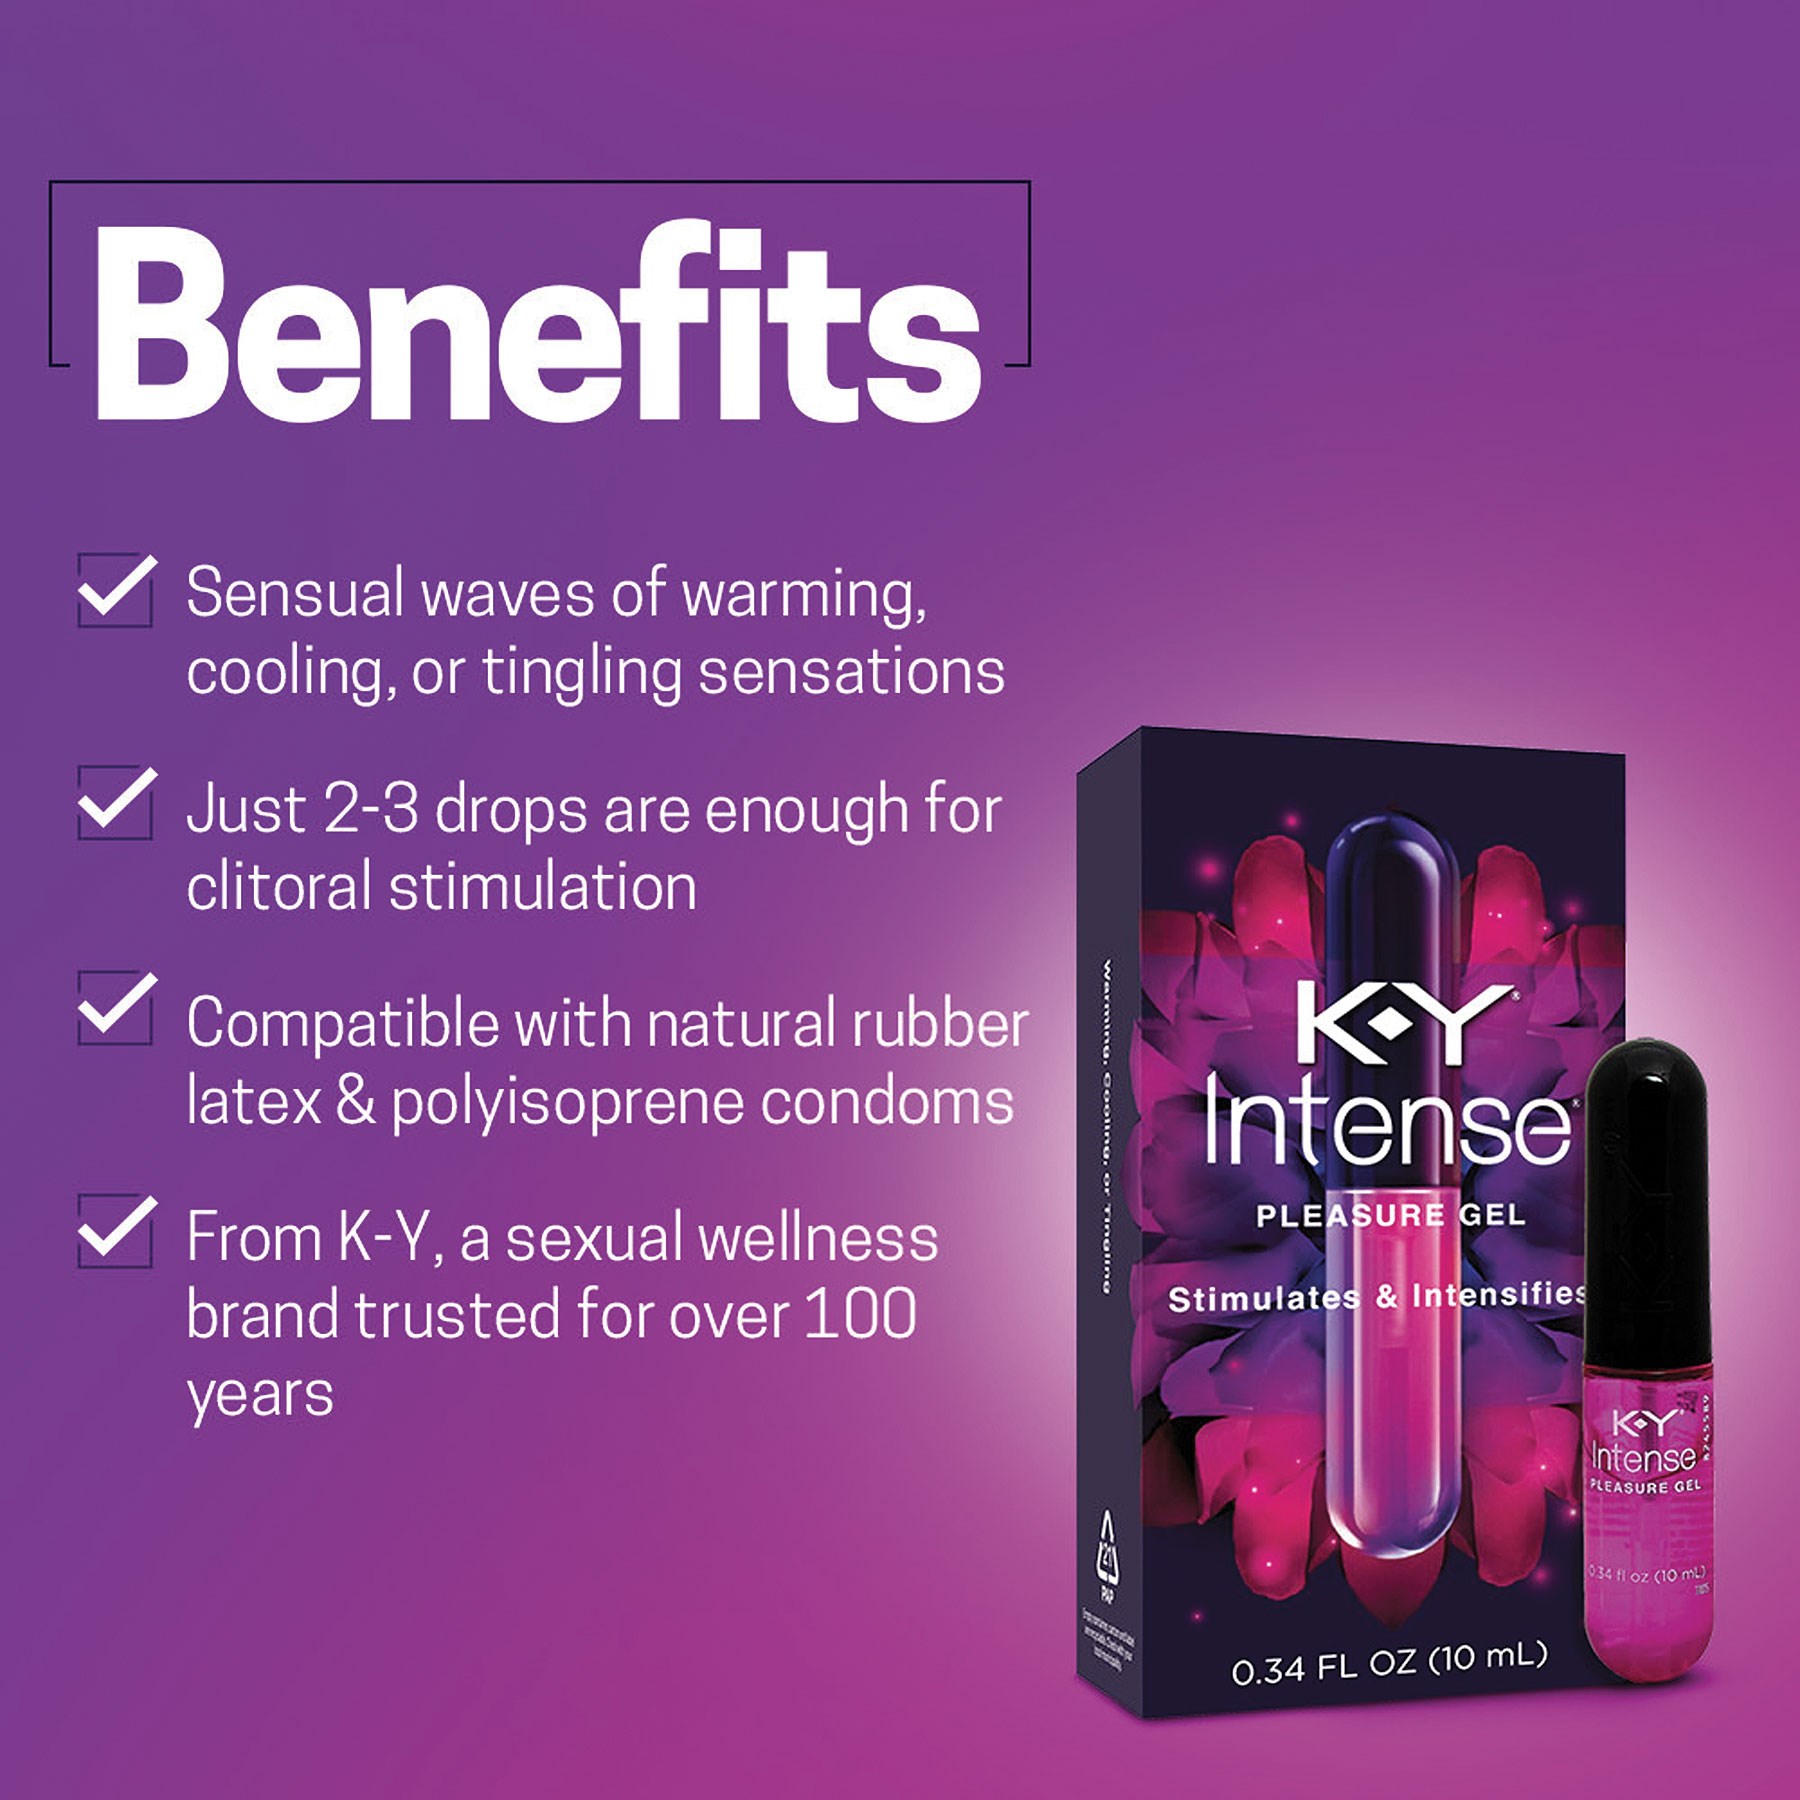 K-Y Intense Pleasure Gel benefits